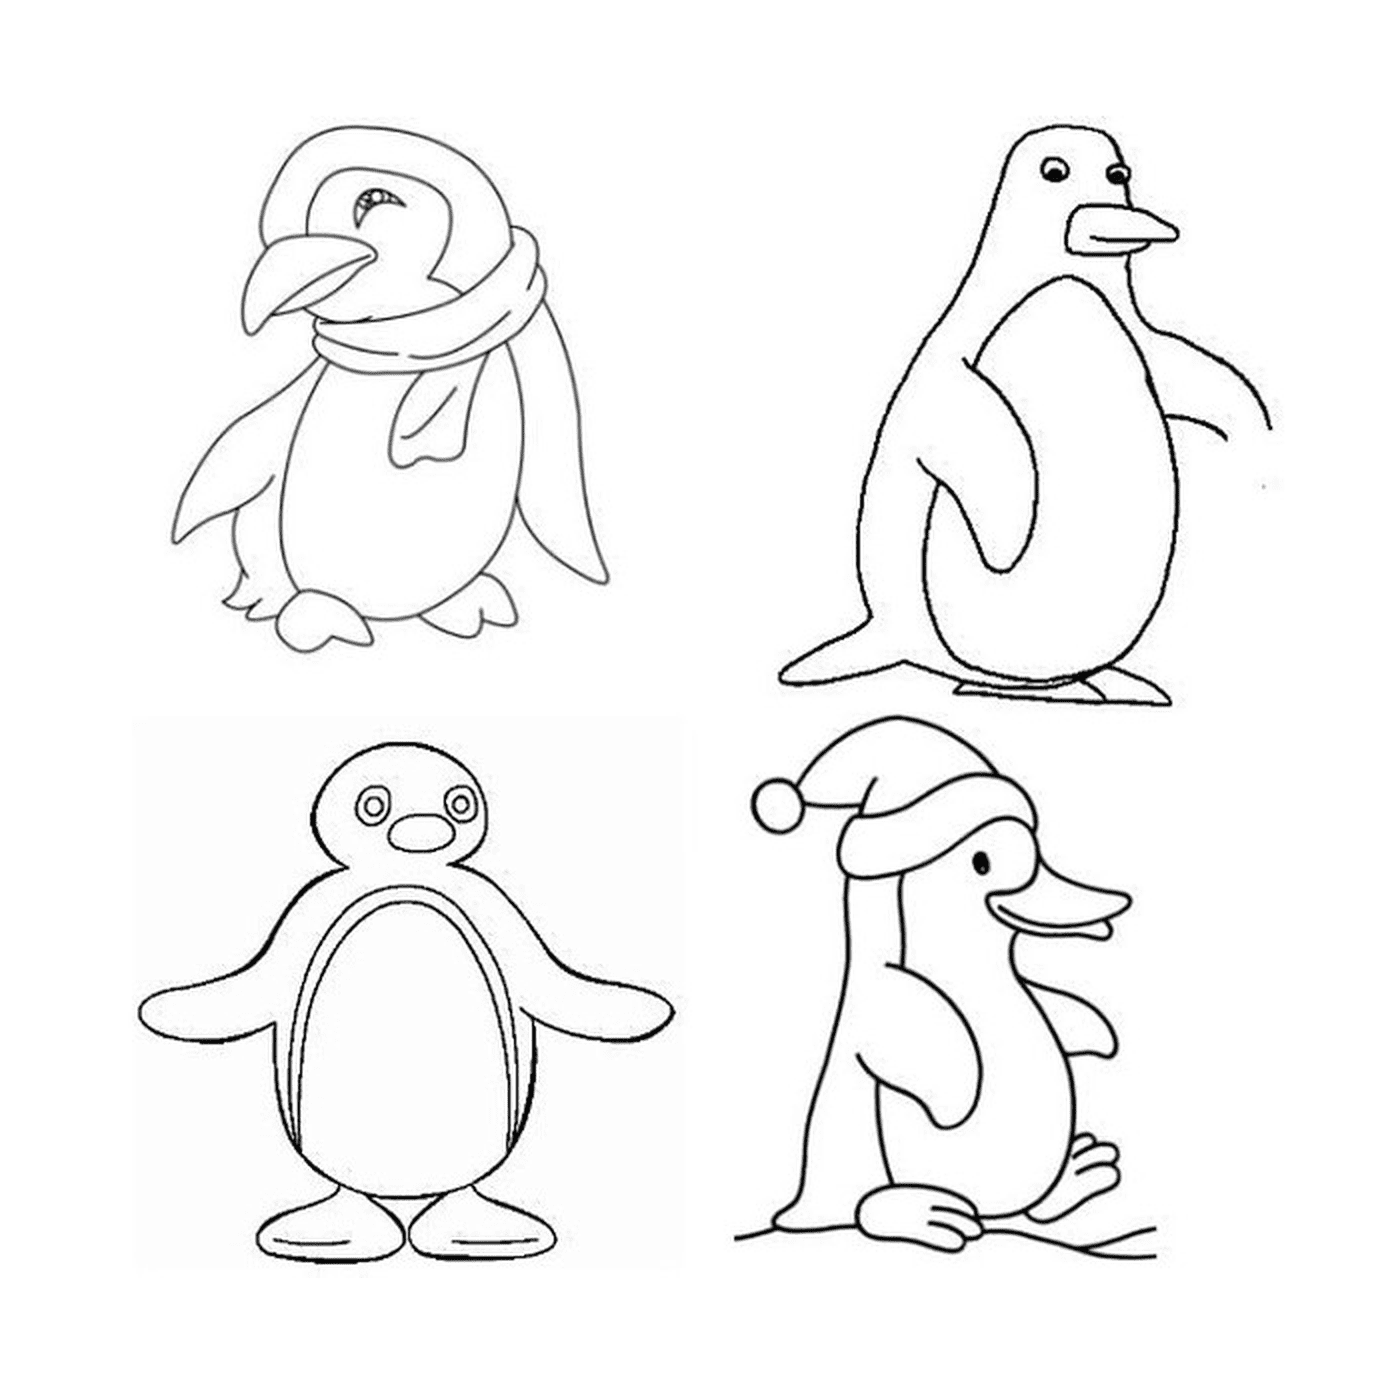   Quatre pingouins différents en dessin 